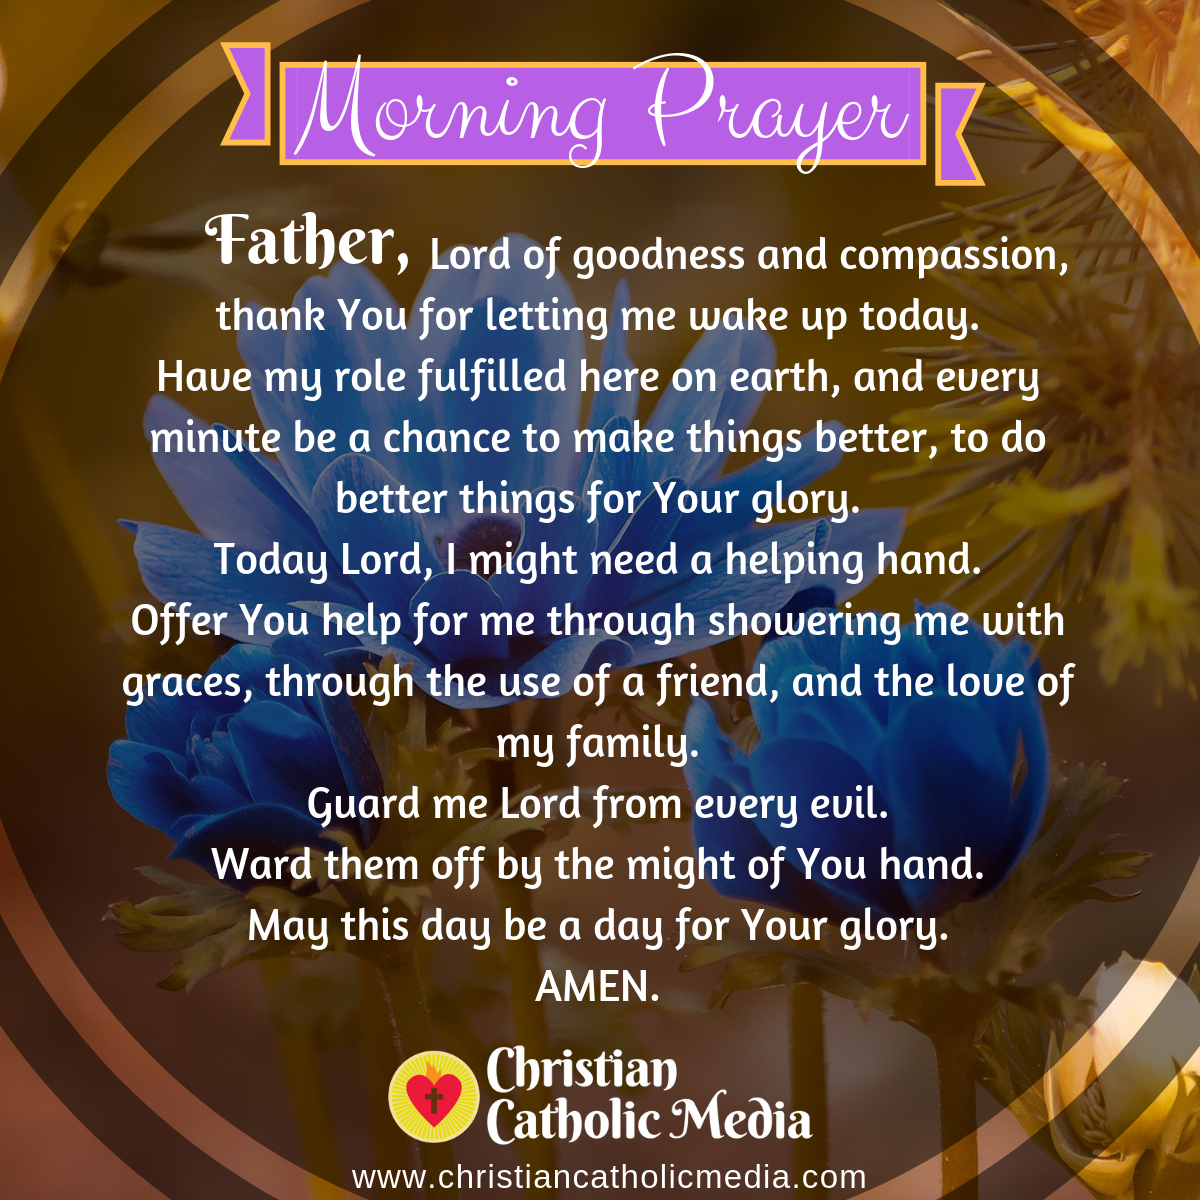 Morning Prayer Catholic Tuesday 172020 Christian Catholic Media